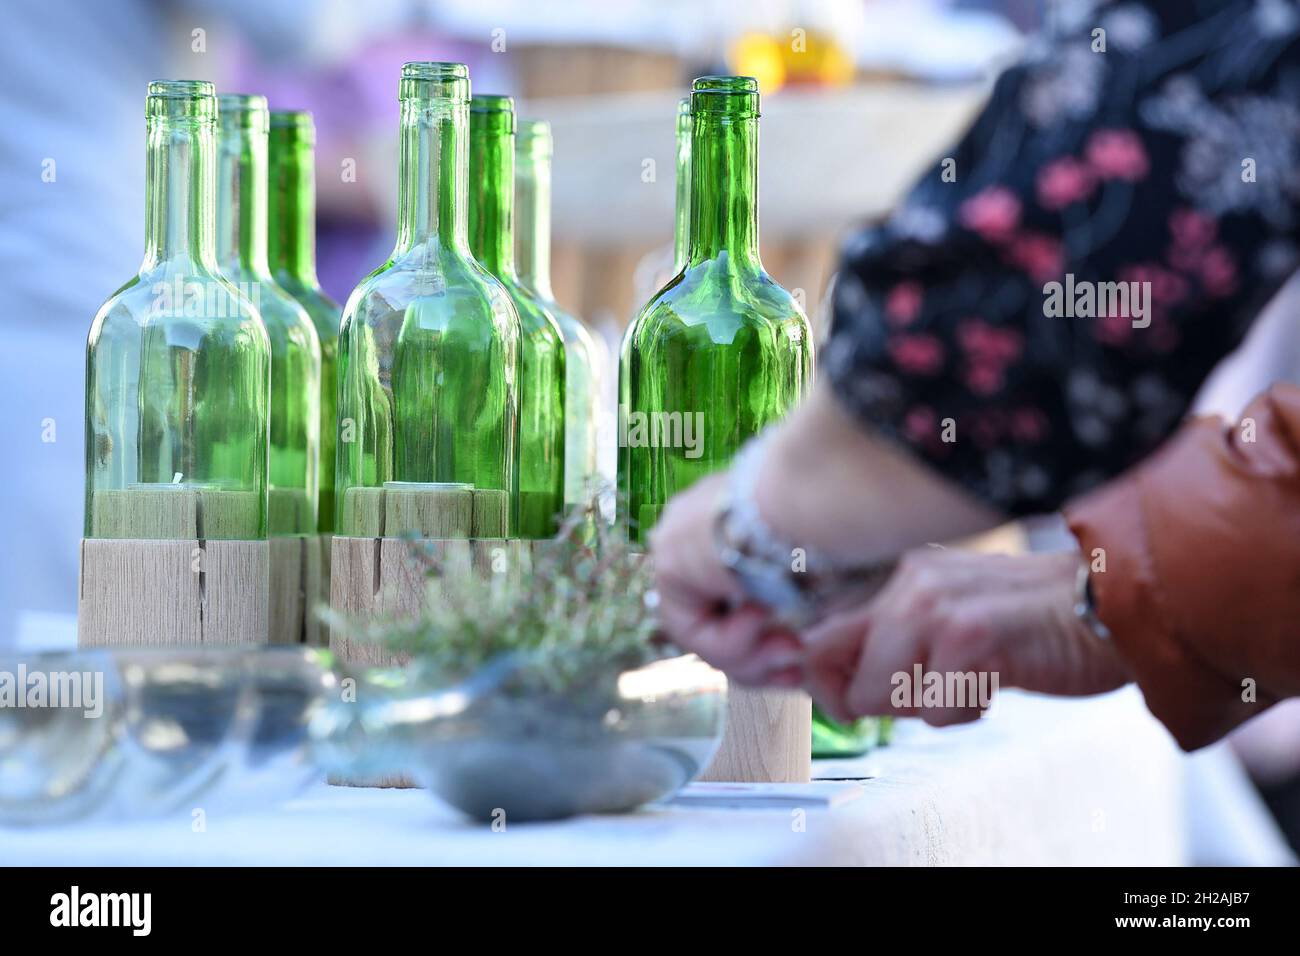 Mehrere leere Weinflaschen als Dekoration auf einem Tisch - Several empty wine bottles as decorations on a table Stock Photo